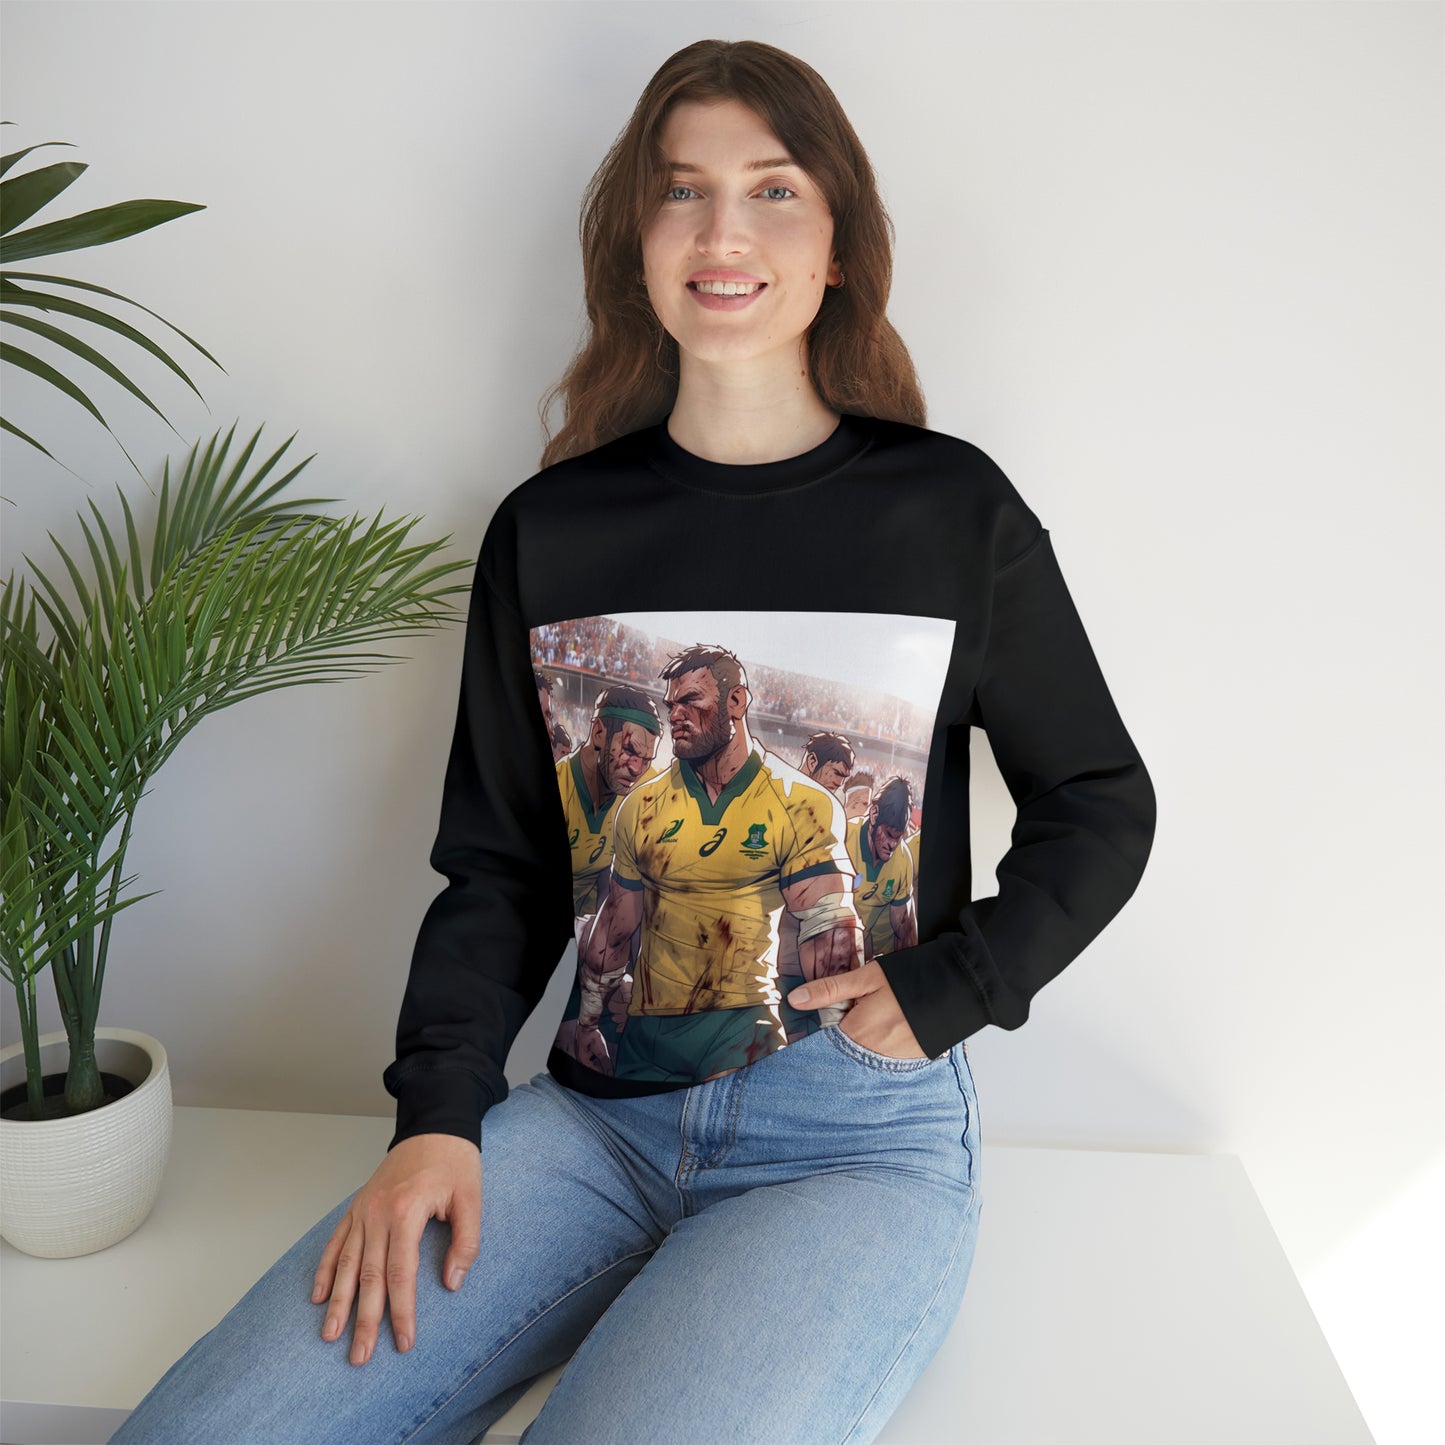 Aussie Aussie Aussie - black sweatshirt